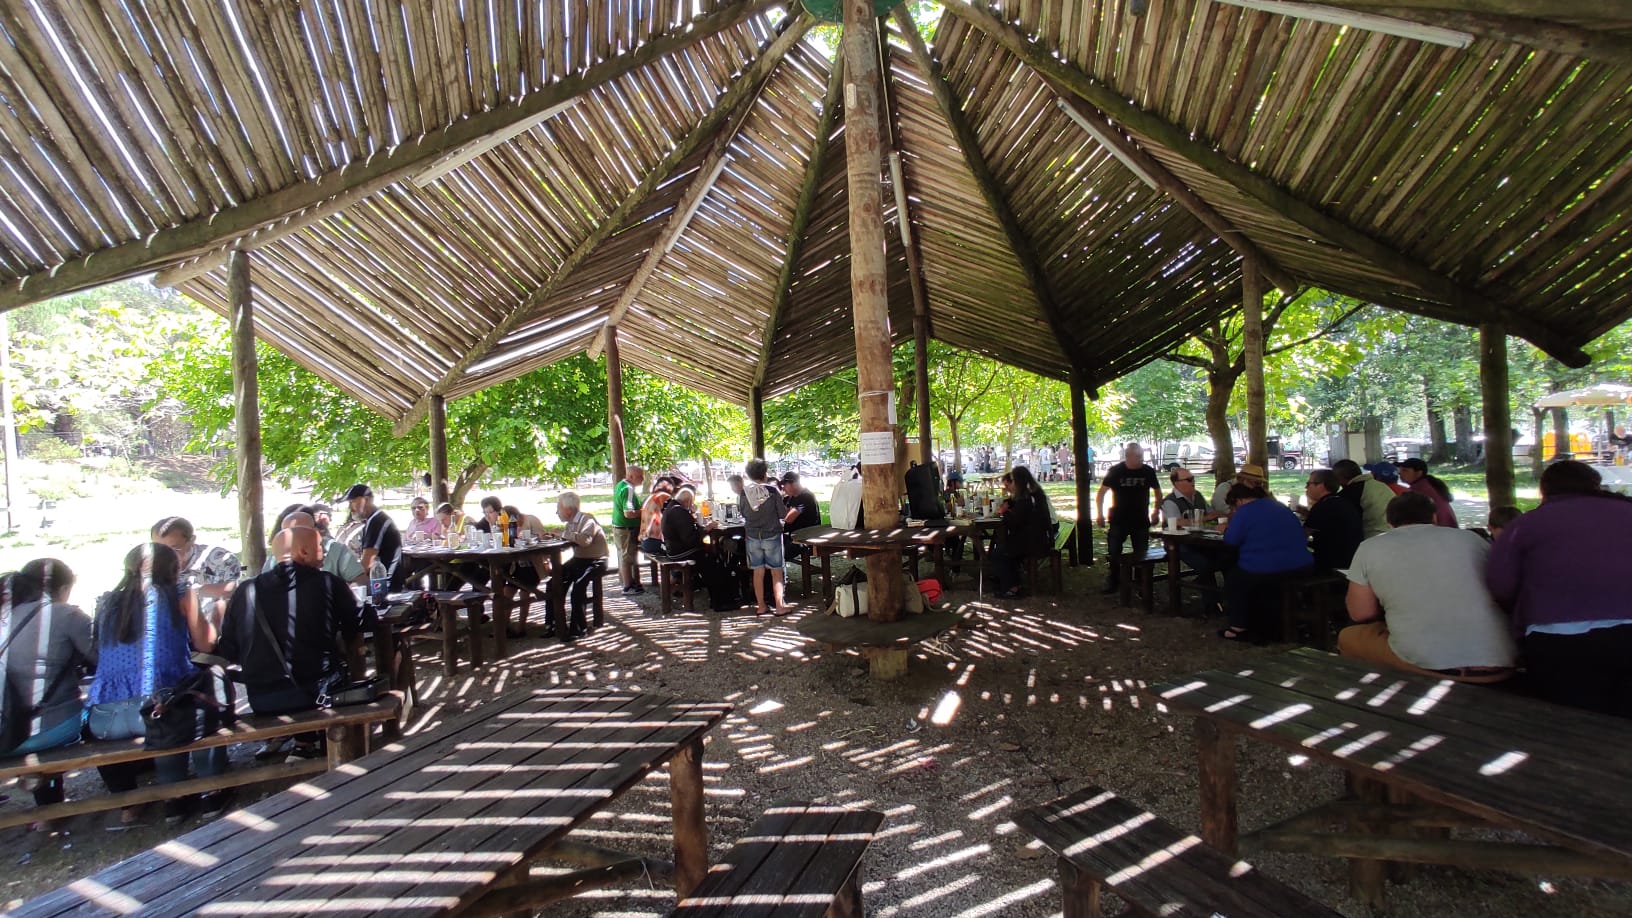 Fotografia tirada durante a sardinhada no Parque de Merendas da Barosa, onde é possível ver-se os participantes sentados em redor das diversas mesas existentes no espaço 